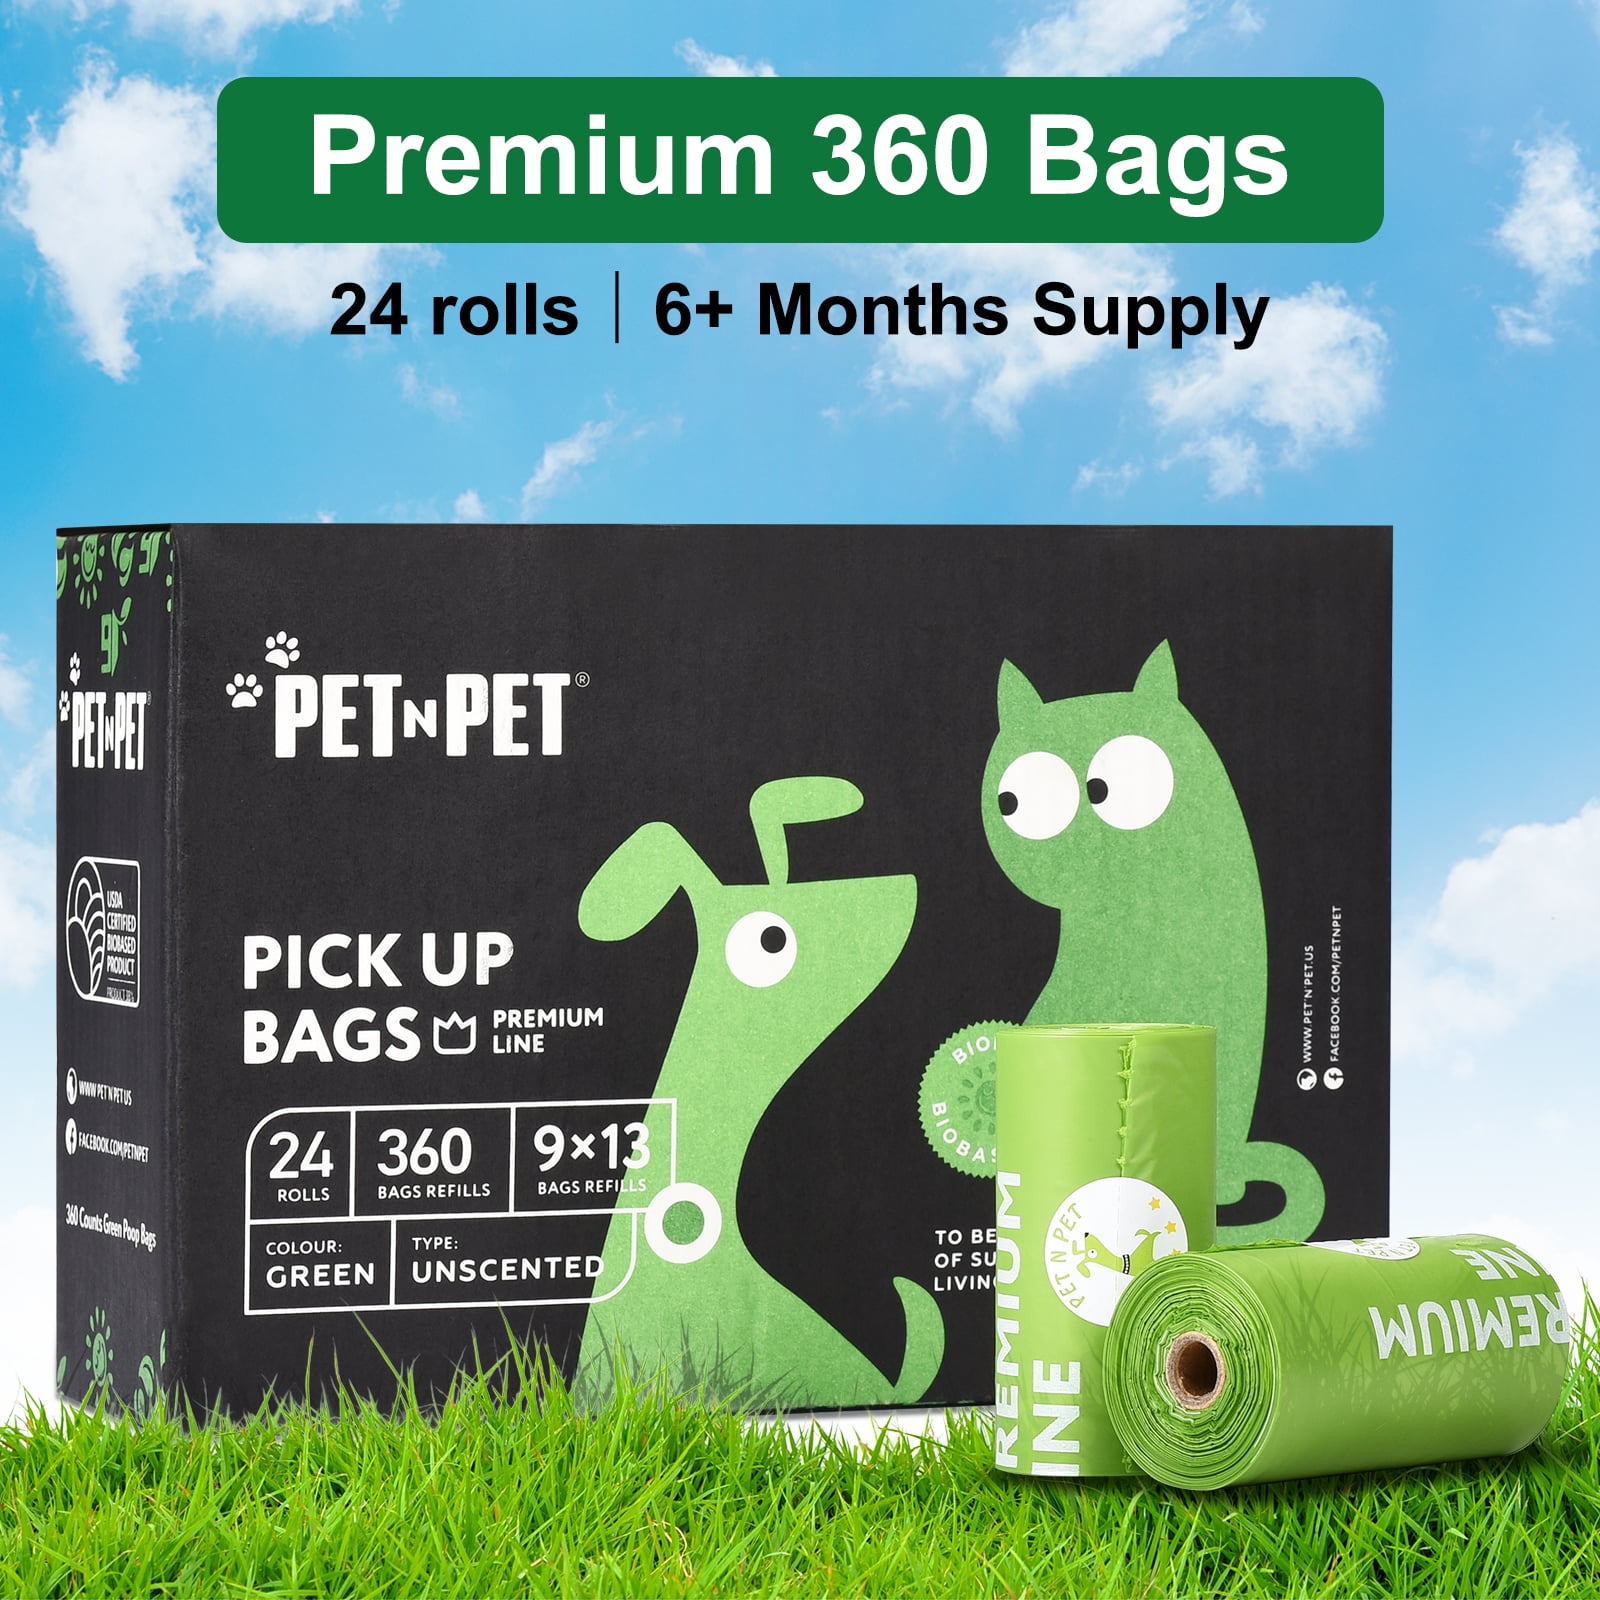 Pet N Pet Dog Waste Bags USDA Certified 38% Plant Based & 62% PE, 1080  Leak-Proof, Extra Thick Large Dog Poop bag Rolls - Green GPETNPET1000 - The  Home Depot